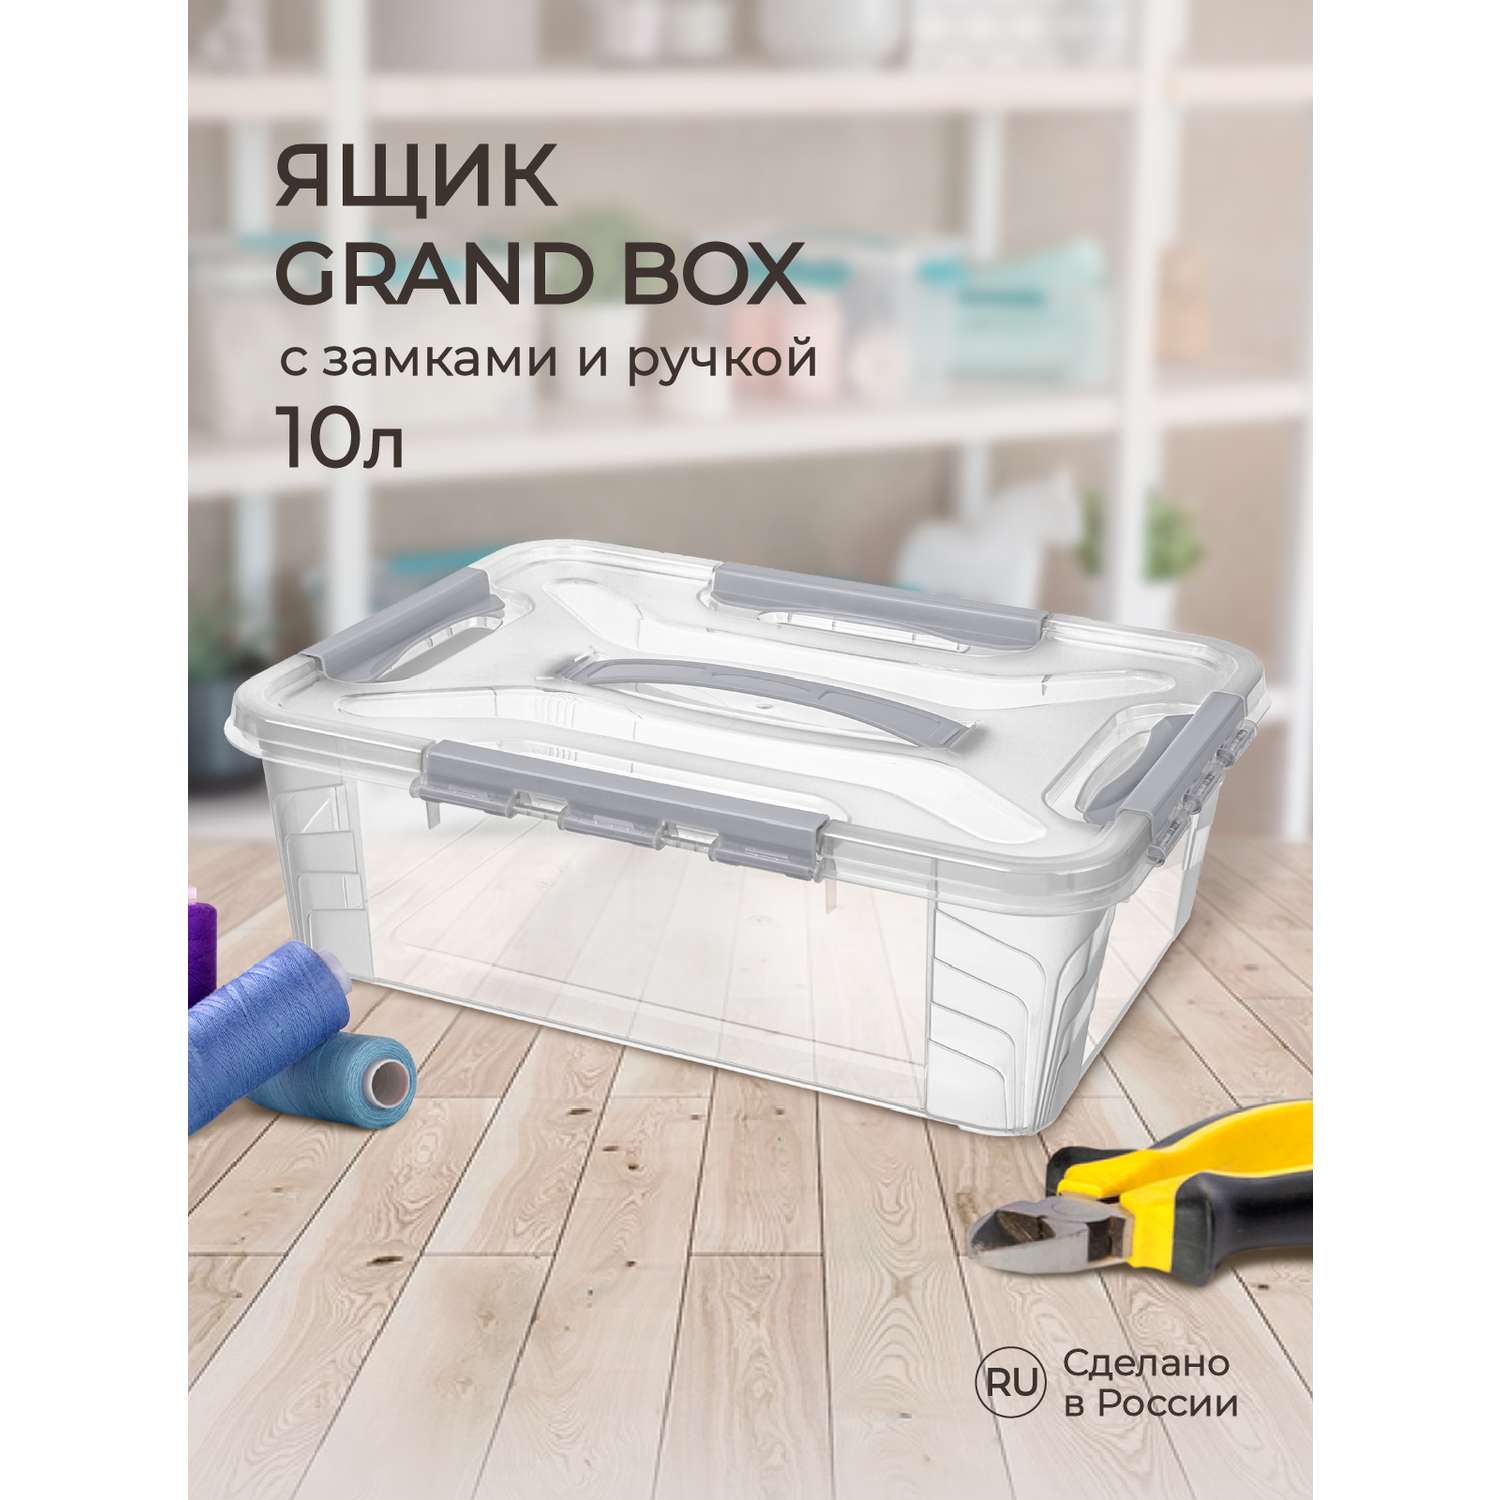 Ящик для хранения Econova универсальный с замками и ручкой Grand Box 10 л светло-серый - фото 1